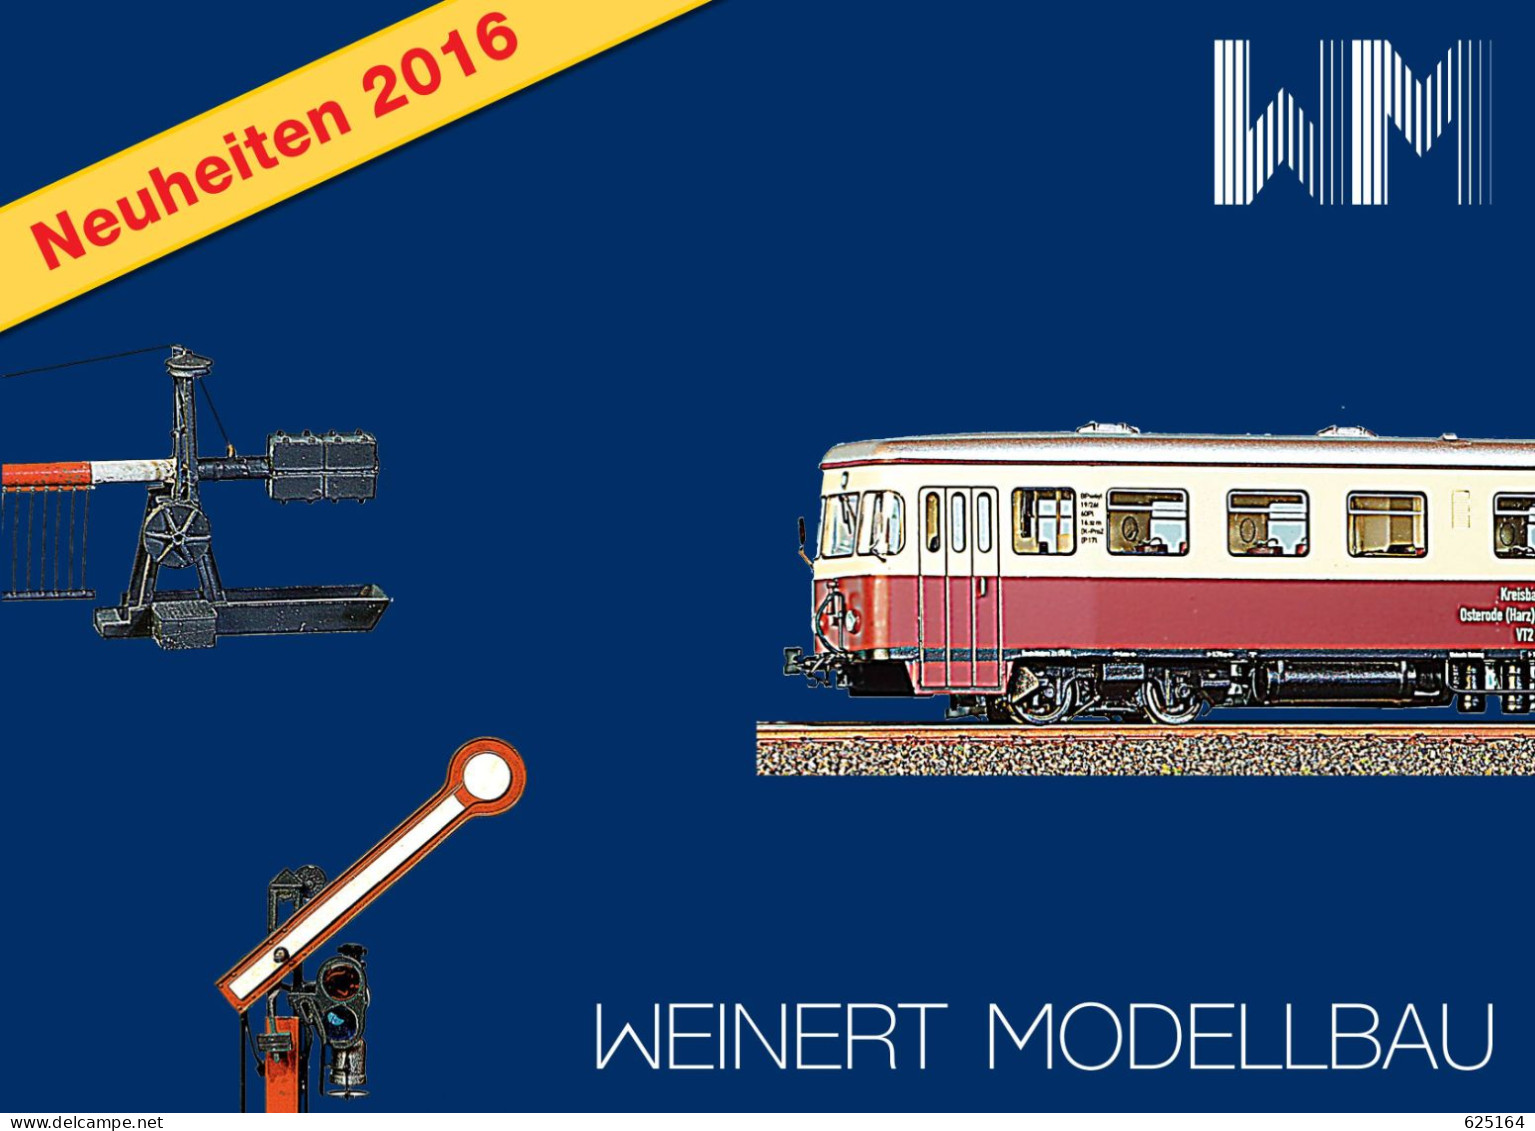 Catalogue WEINERT MODELLBAU 2016 Neuheiten Messing Bausatz Spur HO Z N TT O 1 - Duits